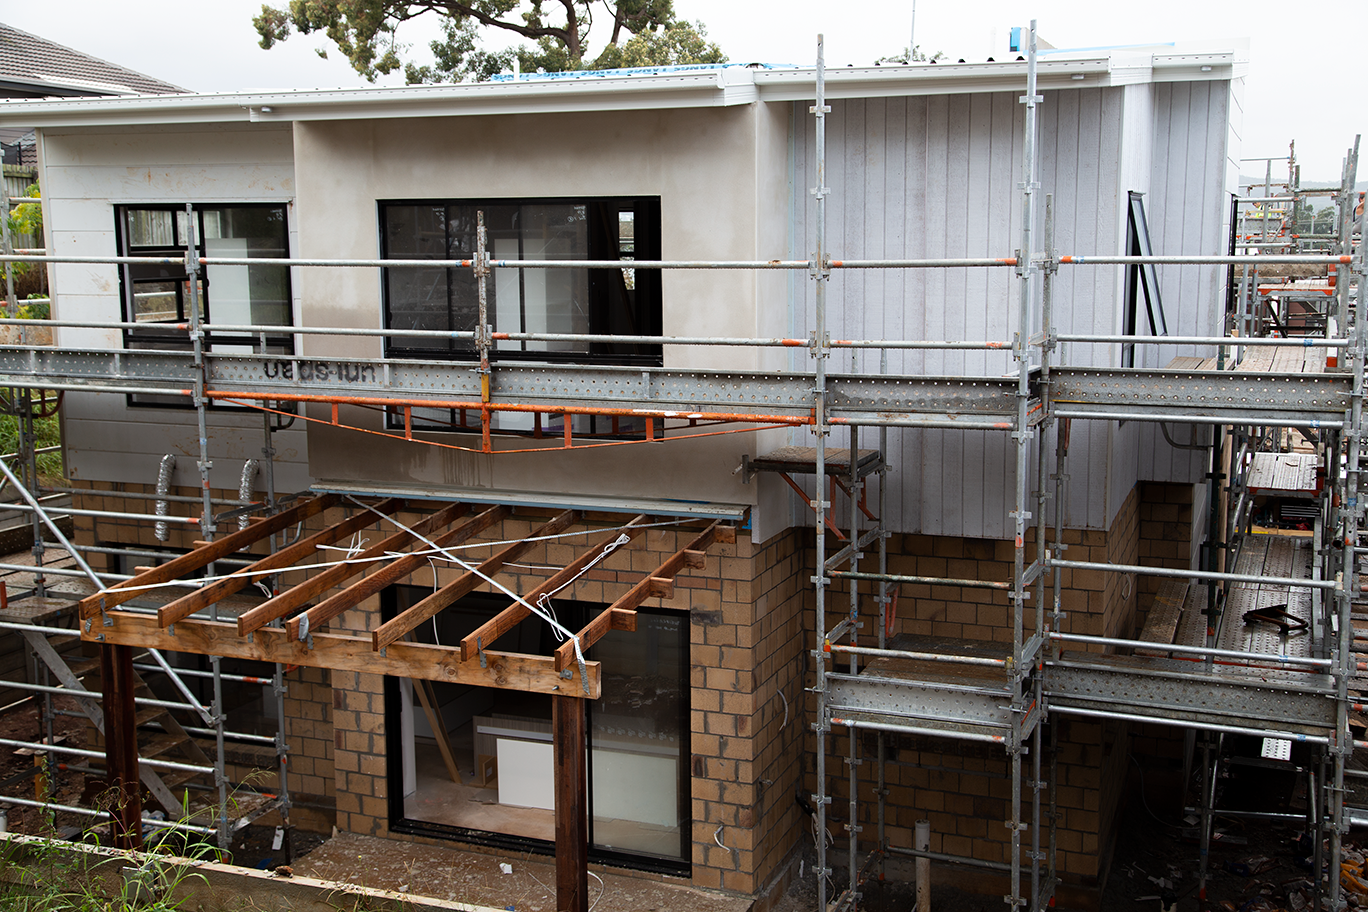 stage 1 townhouse development in Mount Gravatt Brisbane.